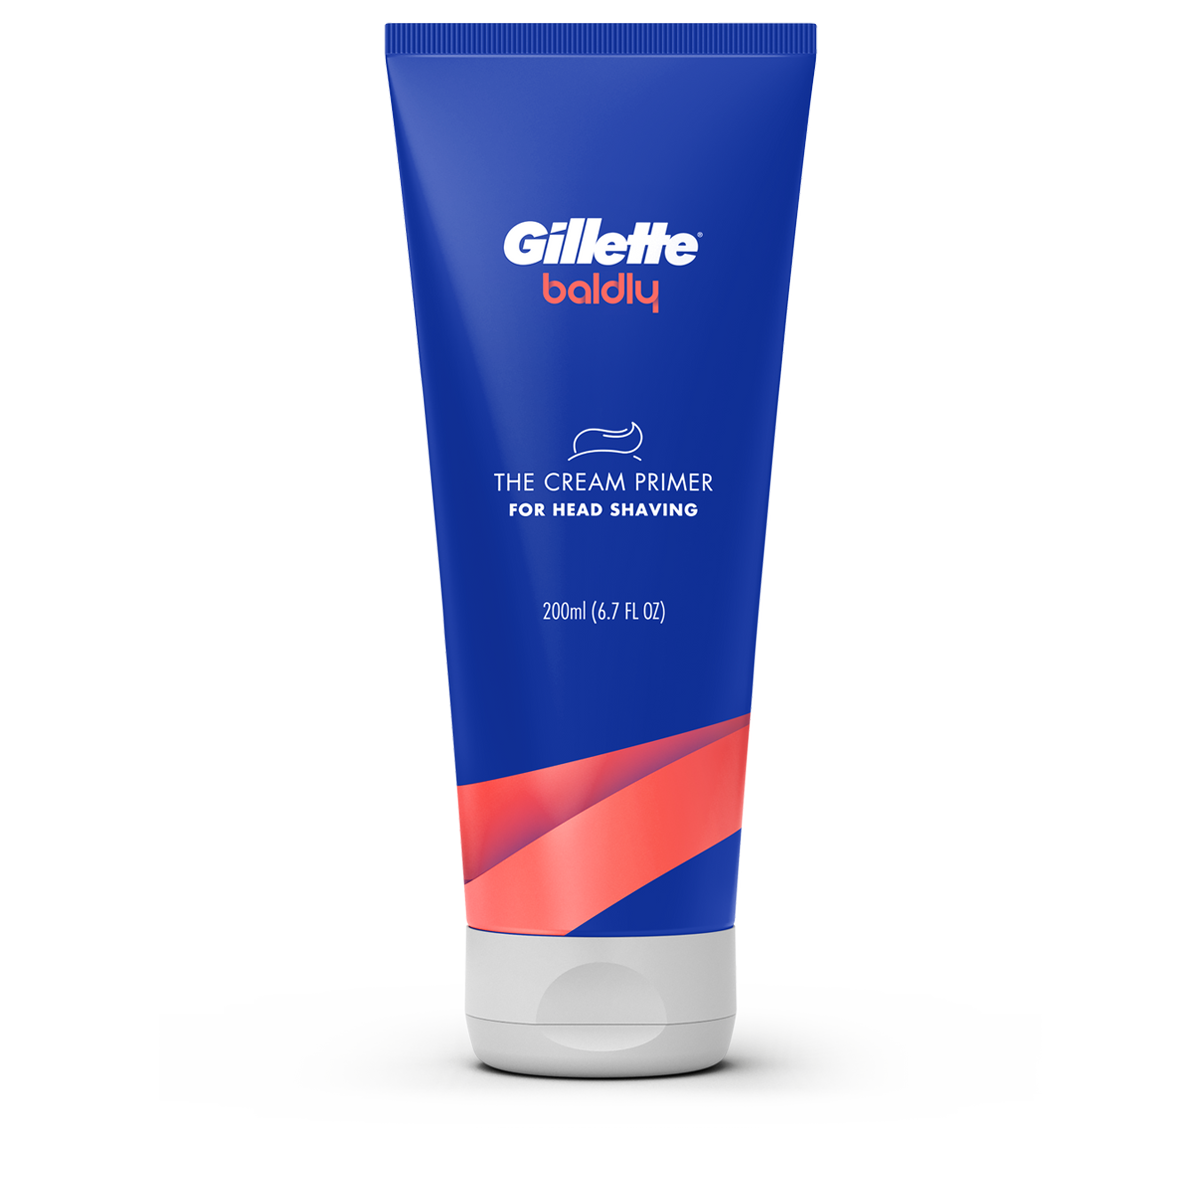 Gillette baldly Shave Cream Primer